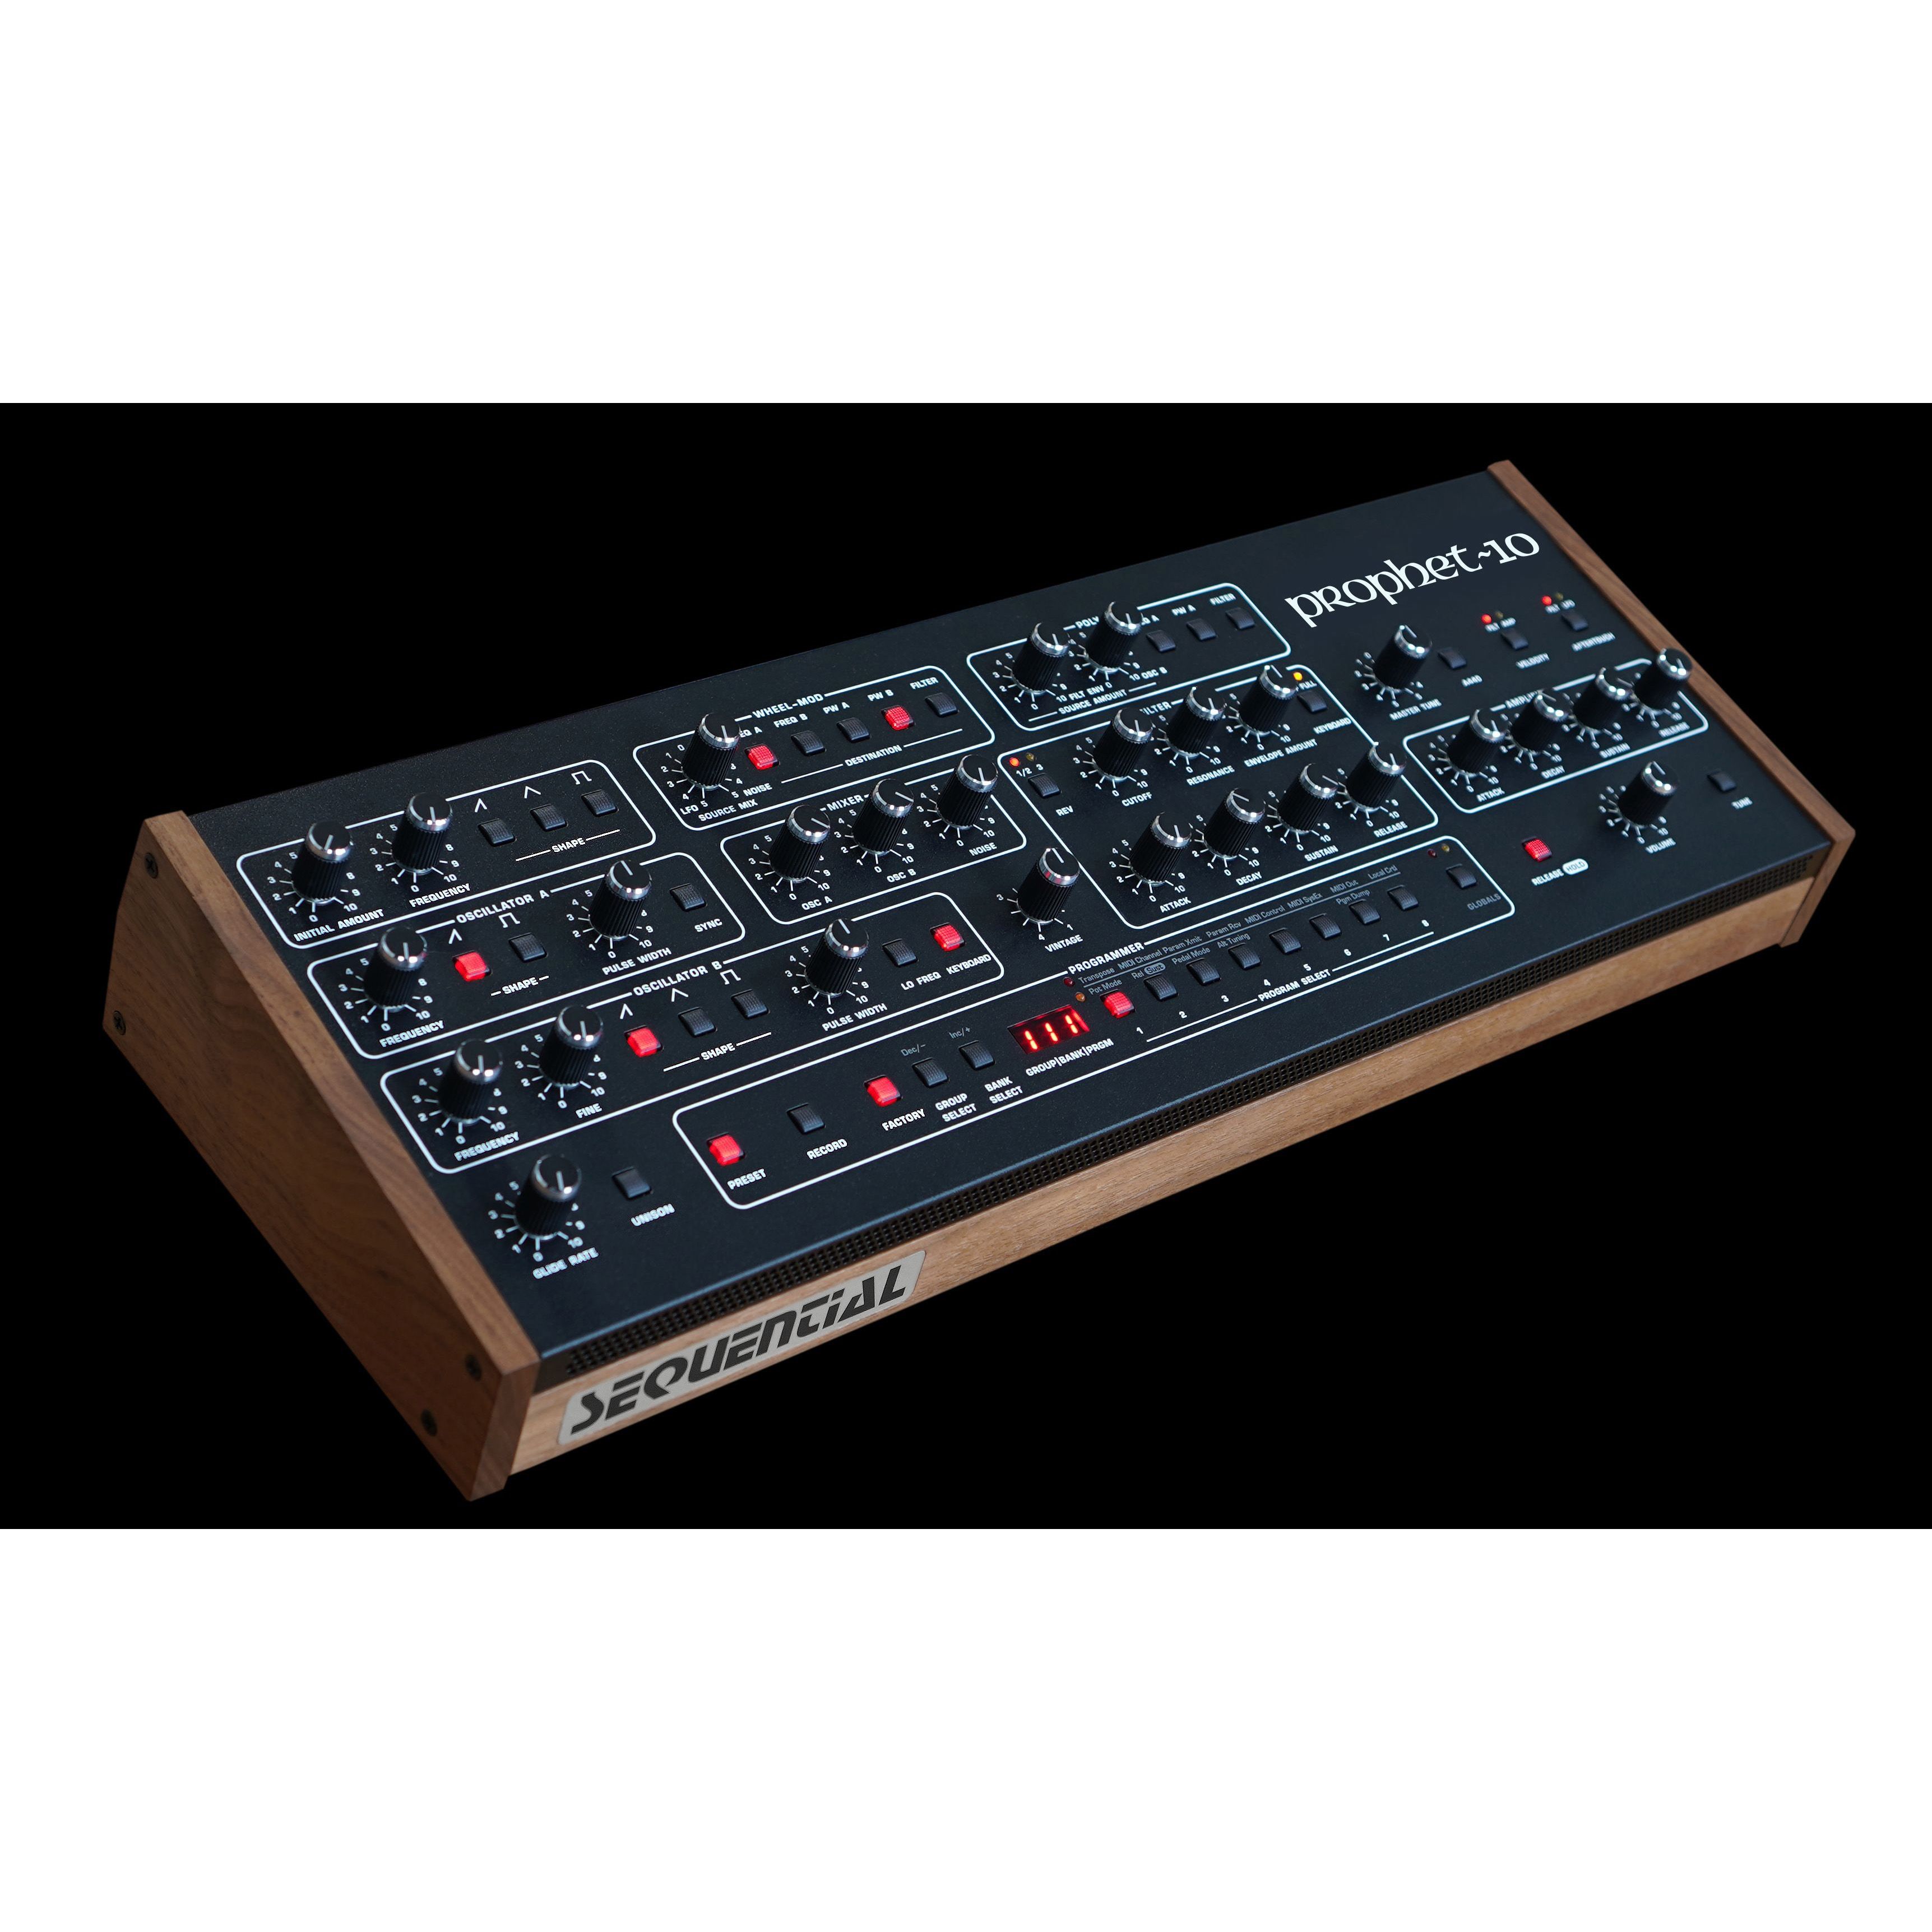 Sequential Dave Smith Instruments Prophet-10 Desktop Module Клавишные цифровые синтезаторы